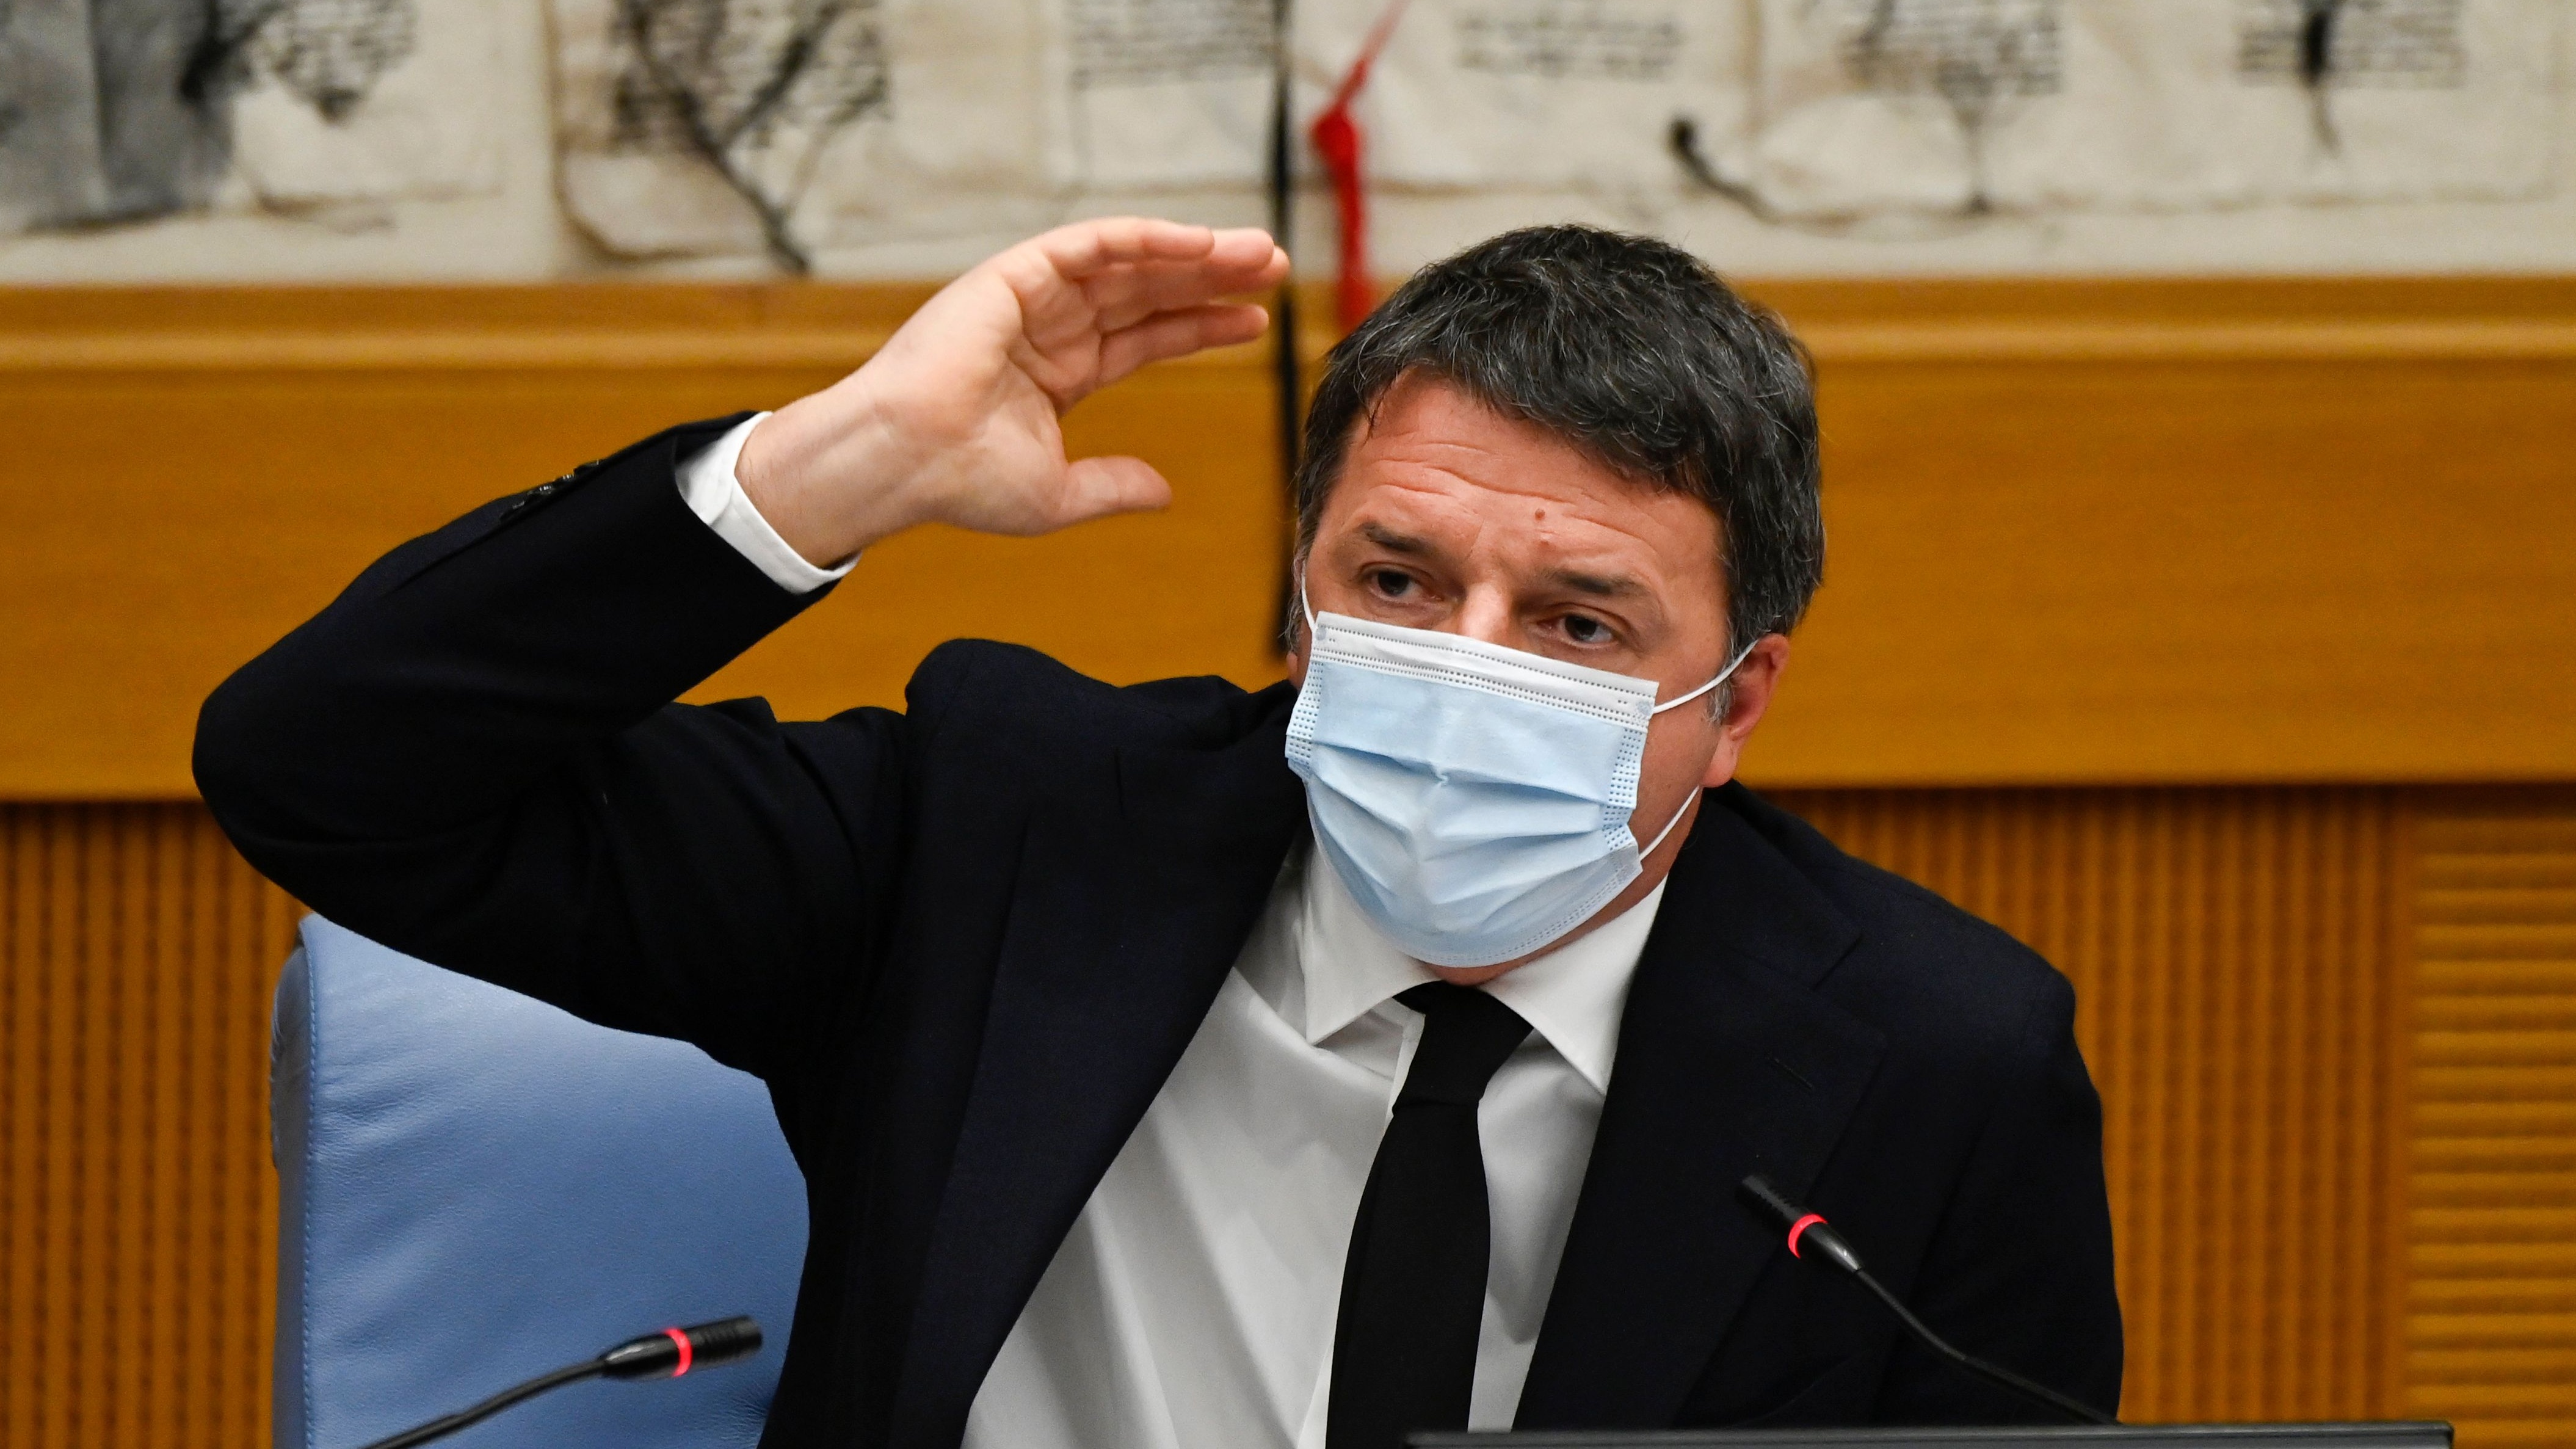 Matteo Renzi holds a press conference